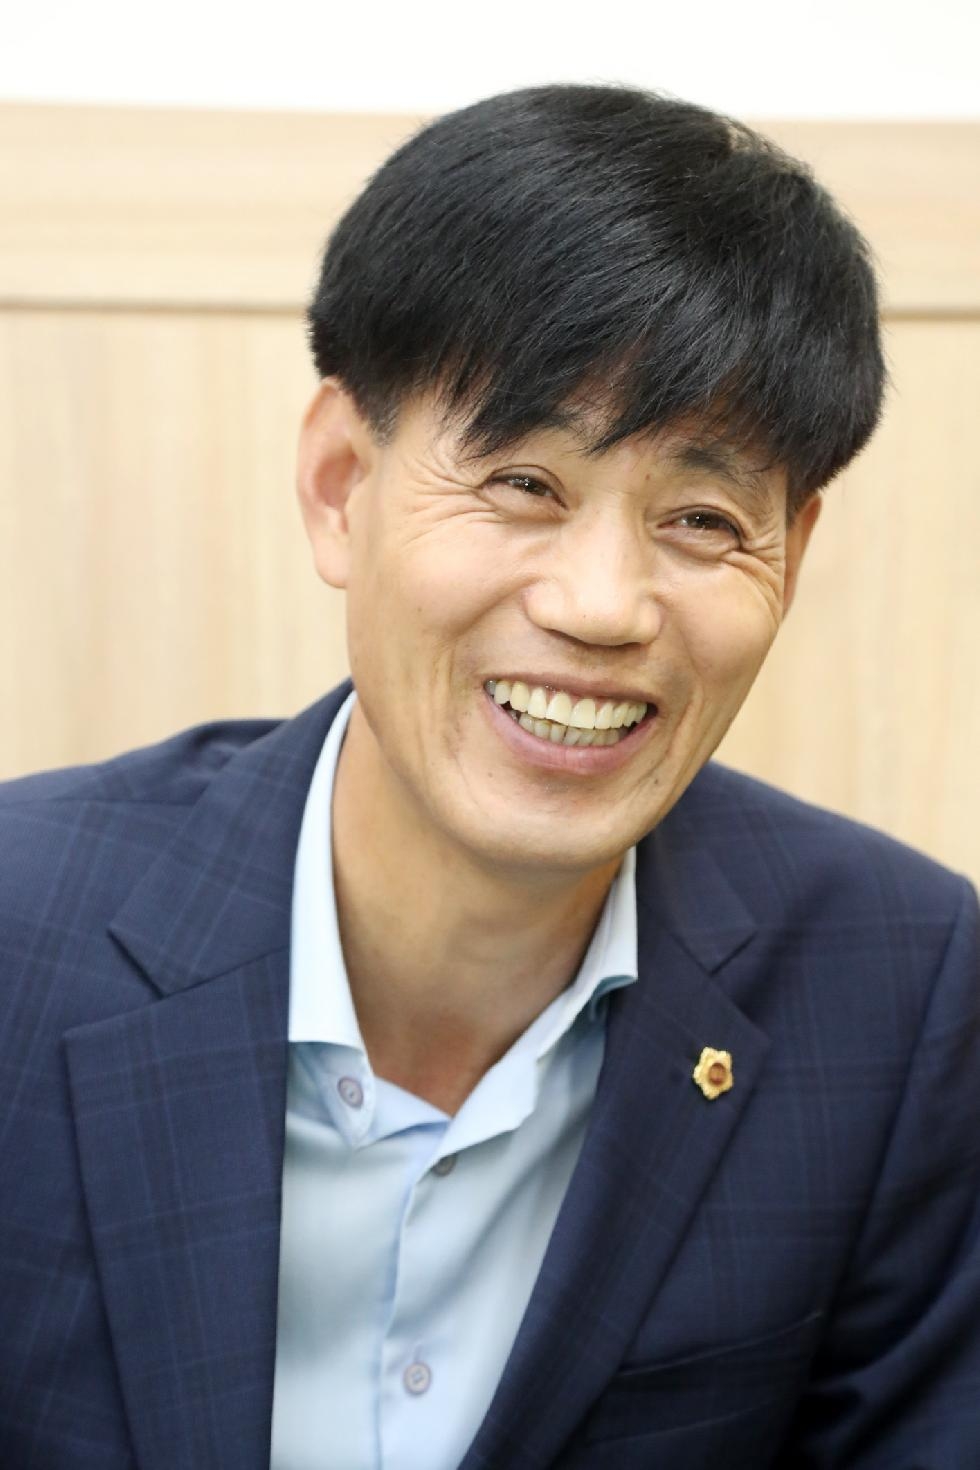 경기도의회 양운석 의원, 은둔형 외톨이 지원 조례 제정 나선다